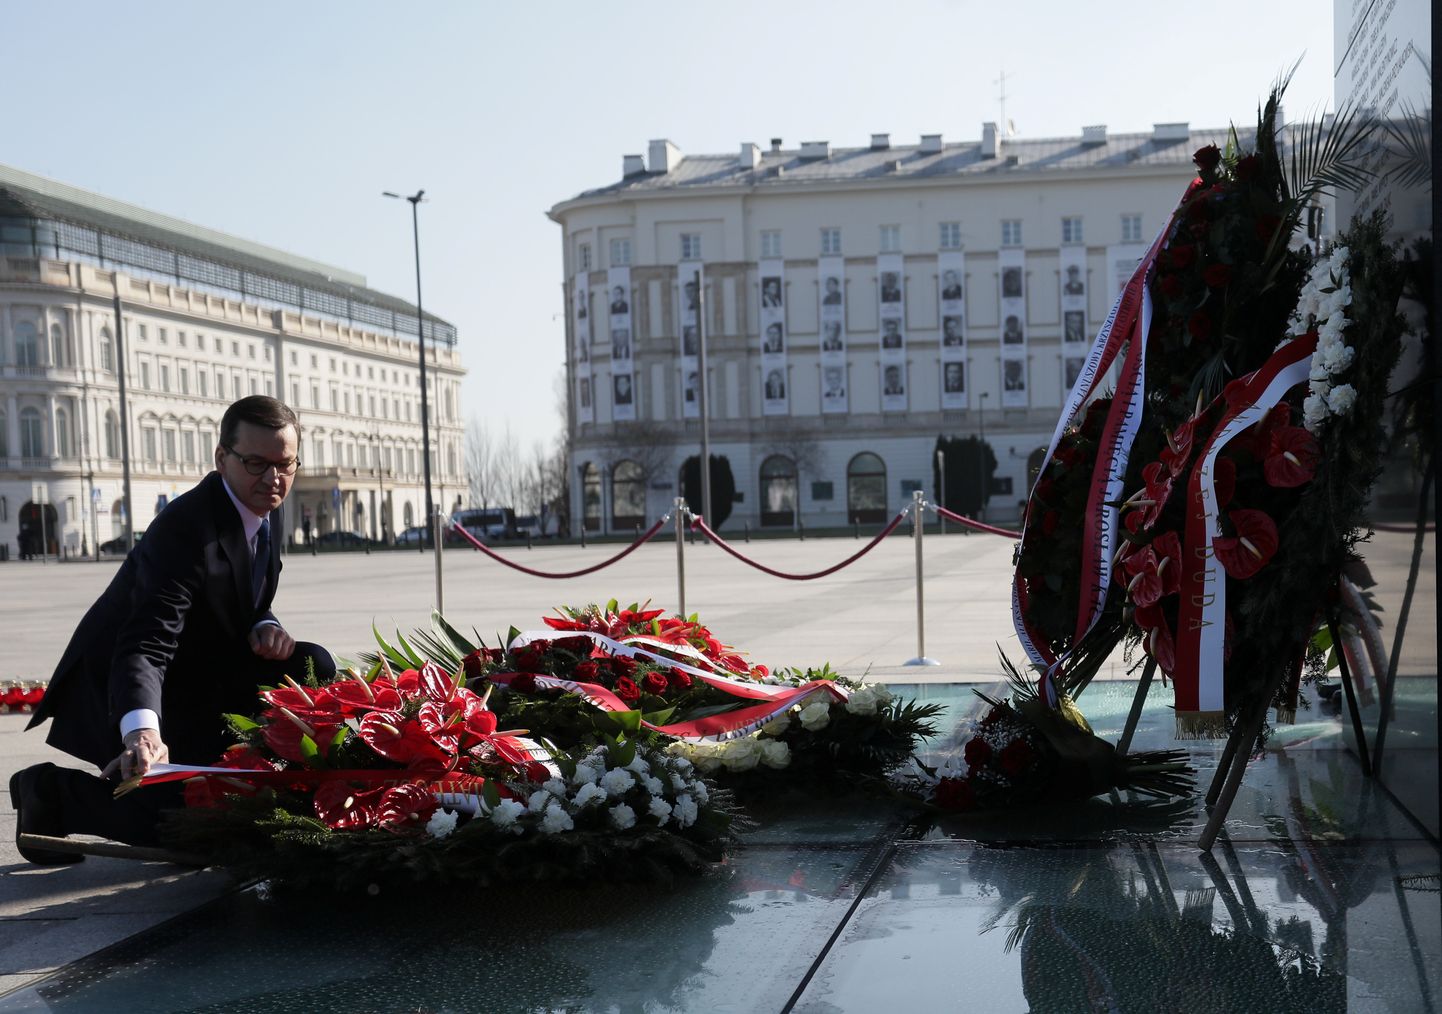 Poola peaminister Mateusz Morawiecki asetab pärja 10 aasta eest Smolenski lennukatastroofis hukkunud ohvrite mälestuseks.